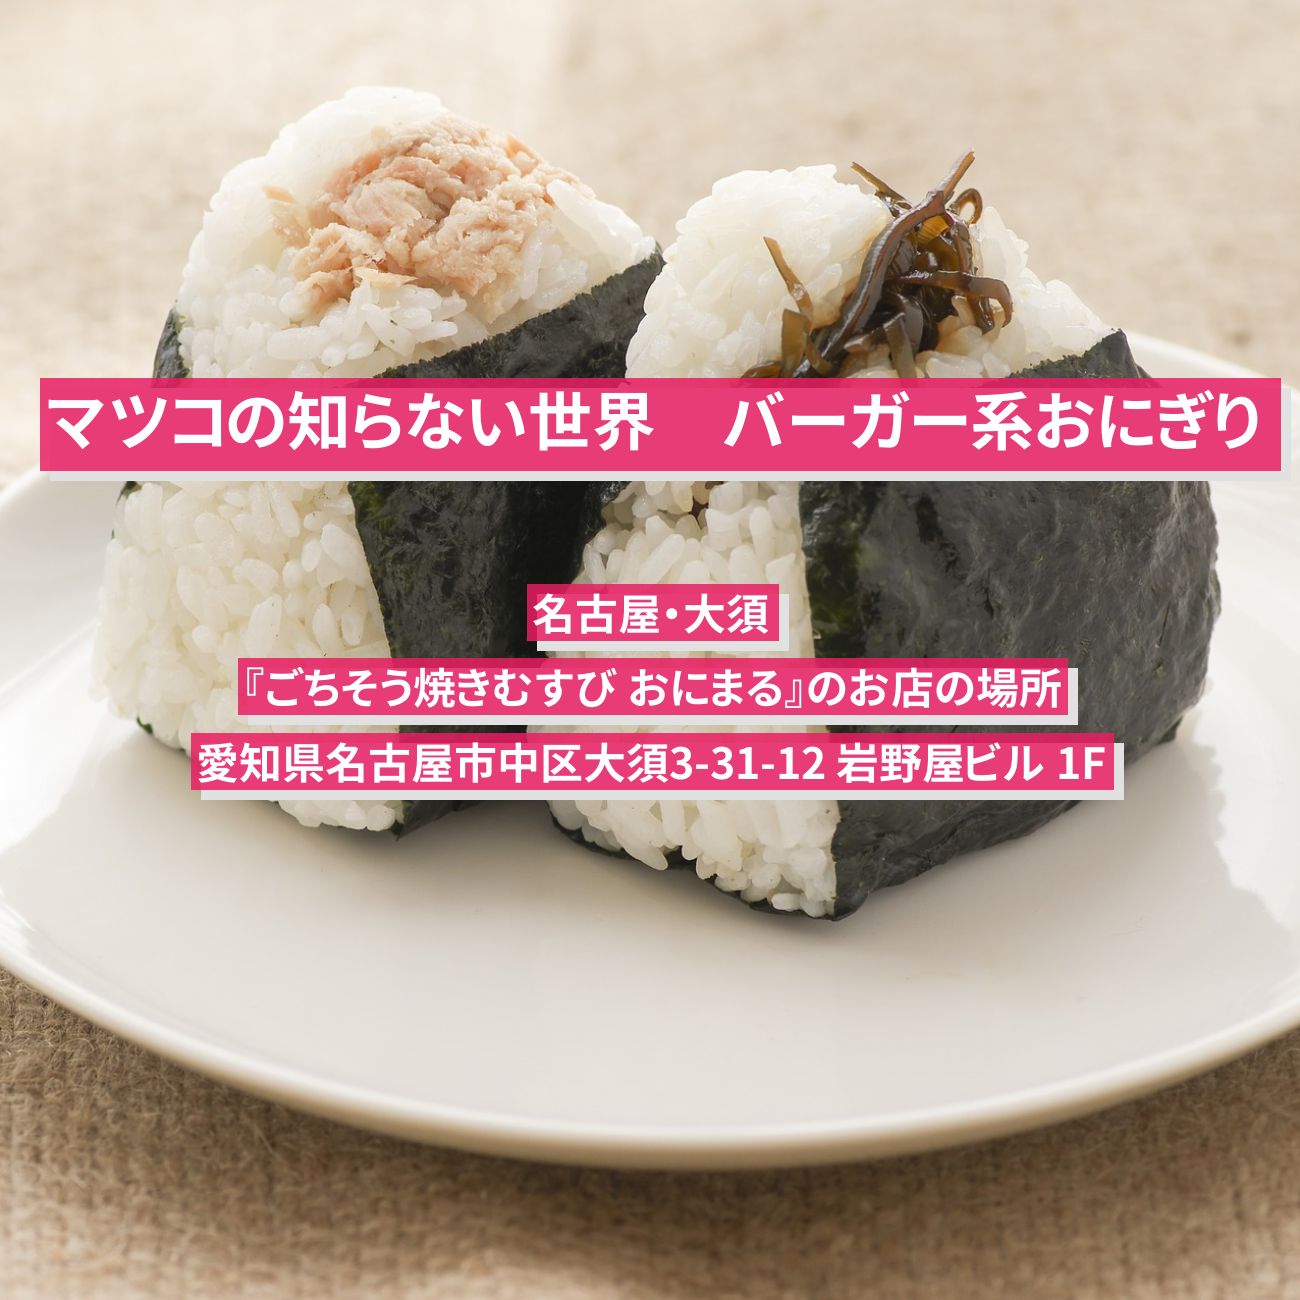 【マツコの知らない世界】バーガー系おにぎり『ごちそう焼きむすび おにまる』名古屋・大須のお店の場所